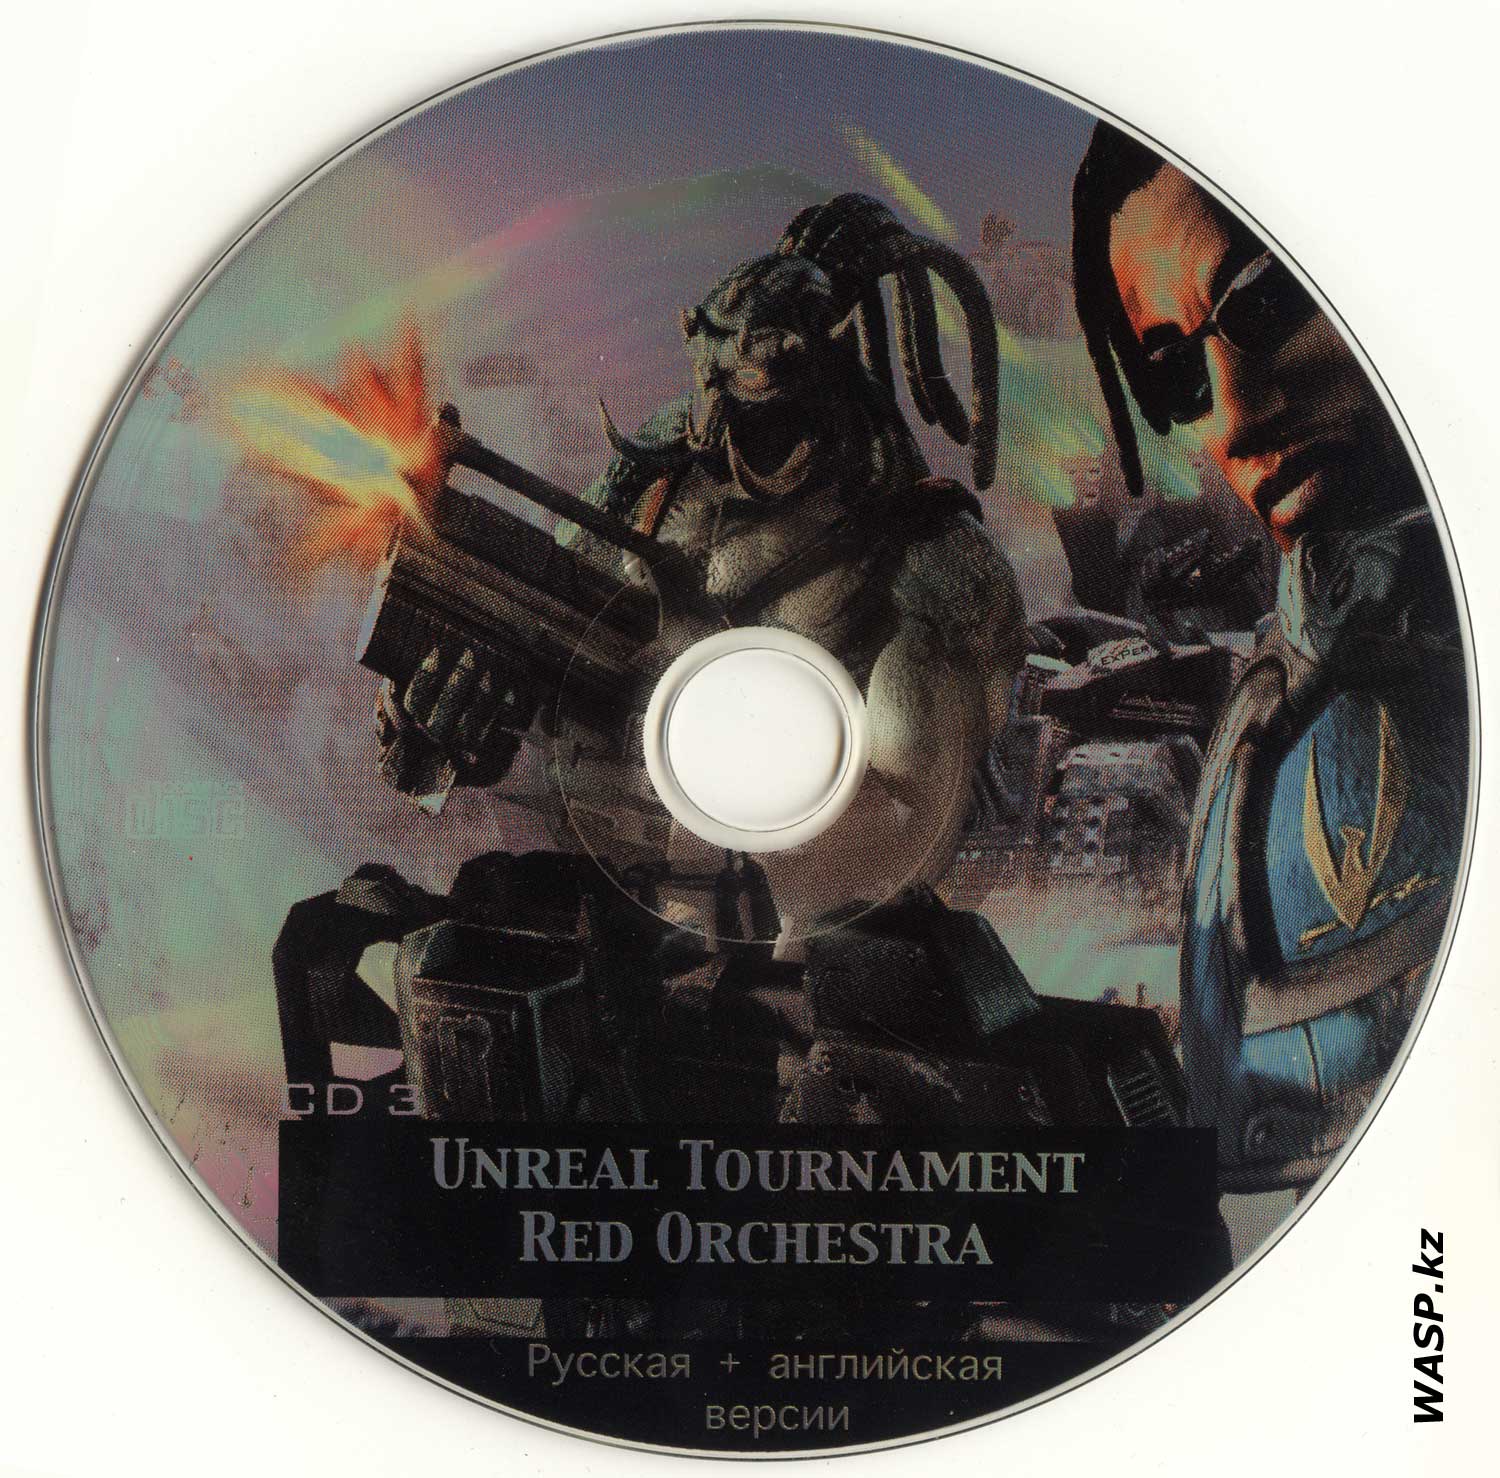 Unreal Tournament Red Orchestra три компакт-диска с игрой